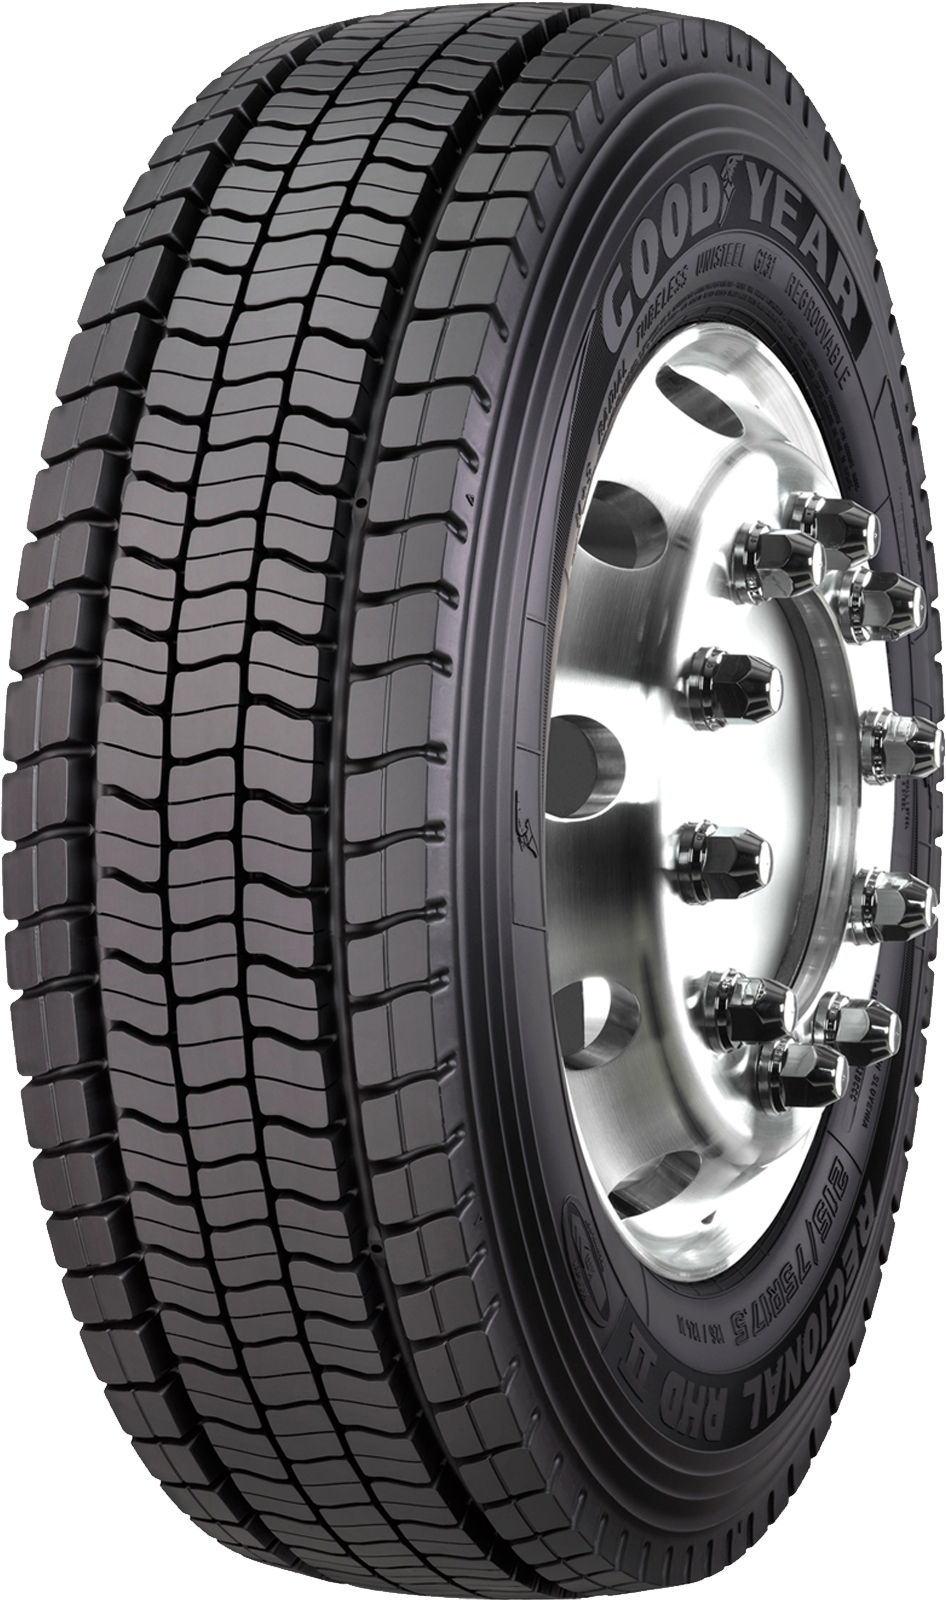 product_type-heavy_tires GOODYEAR REGIONAL RHD 2 235/75 R17 118M